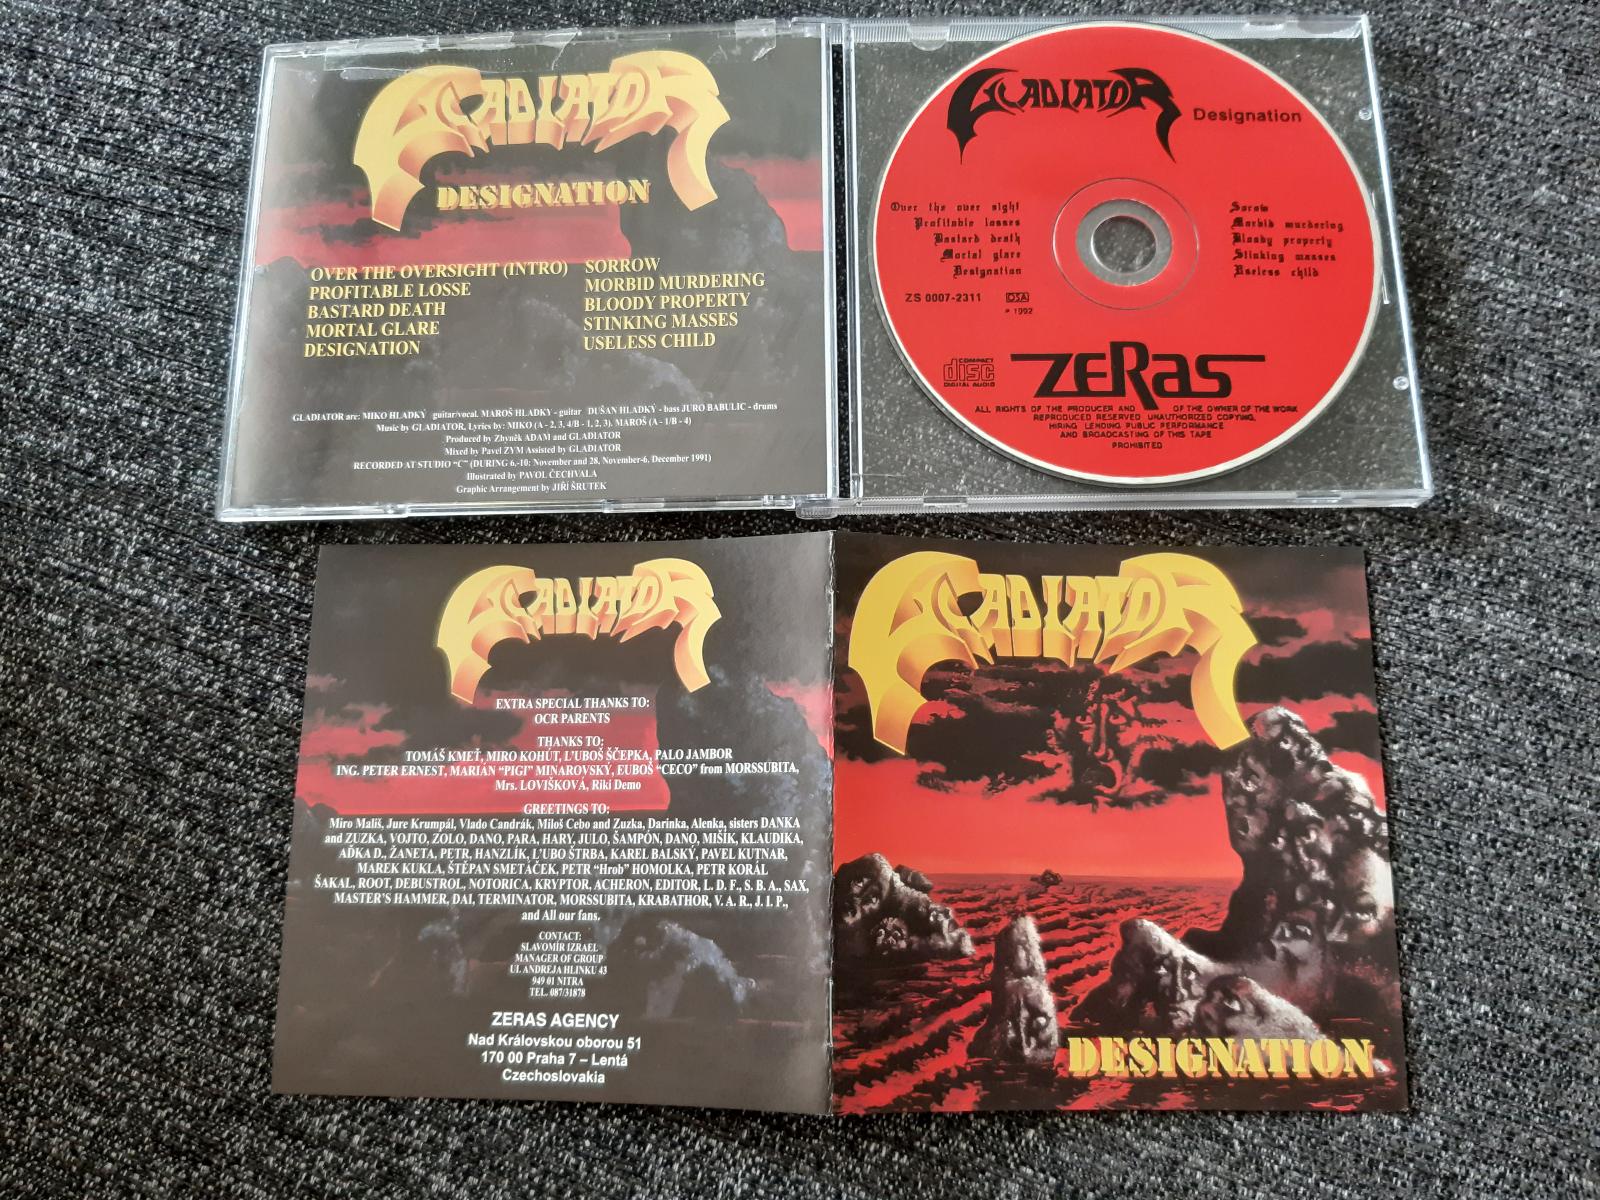 CD GLADIATOR - DESIGNATION 1991 Debustrol ARAKAIN Masters Hammer atp. - Hudba na CD